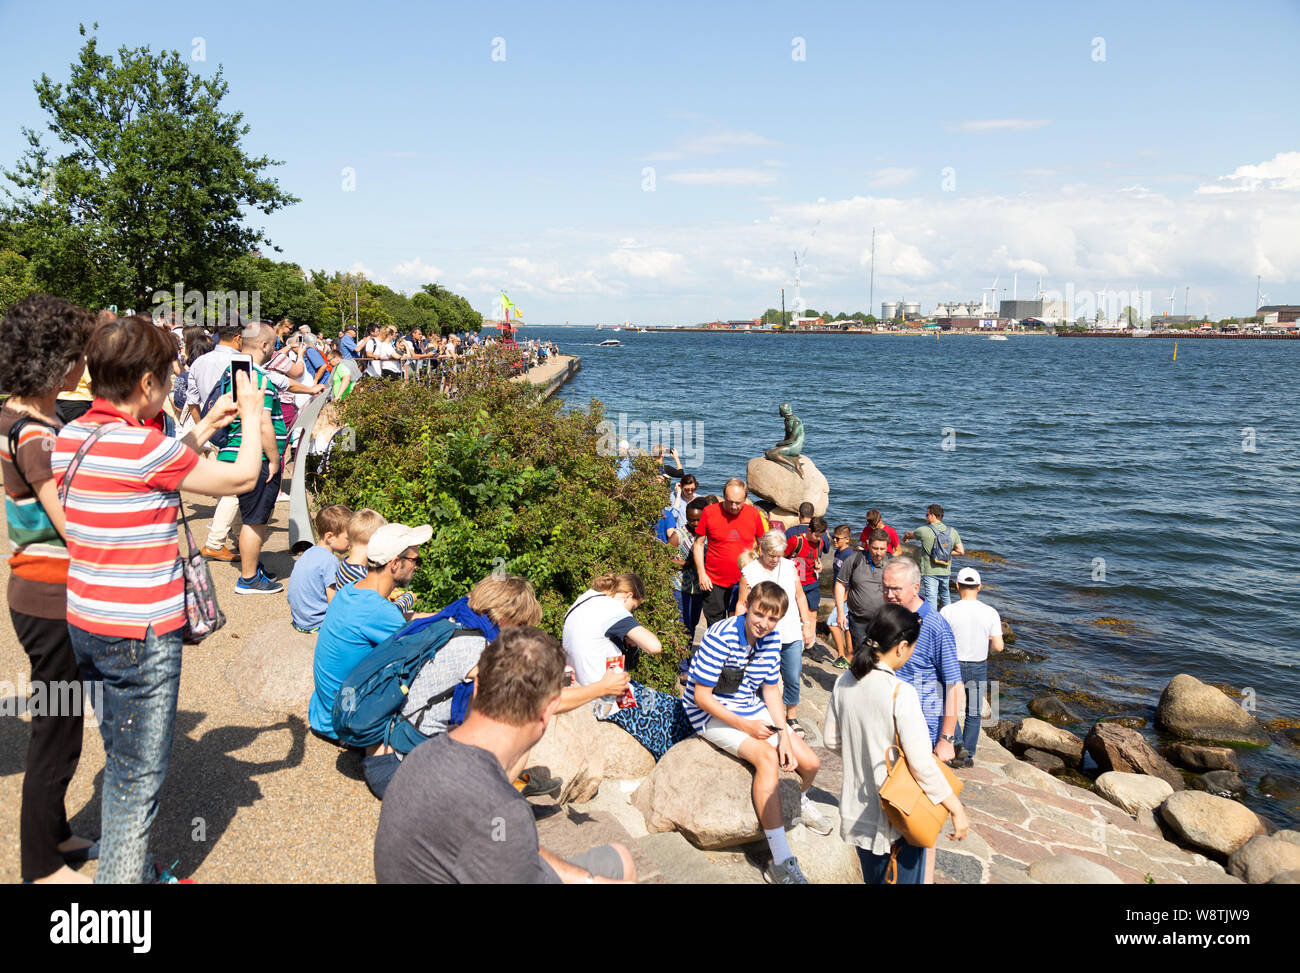 Dinamarca - Viajes de personas hacinadas en torno a la famosa Sirenita, ejemplo de turismo de Dinamarca, Copenhague en Dinamarca, Escandinavia, Europa Foto de stock